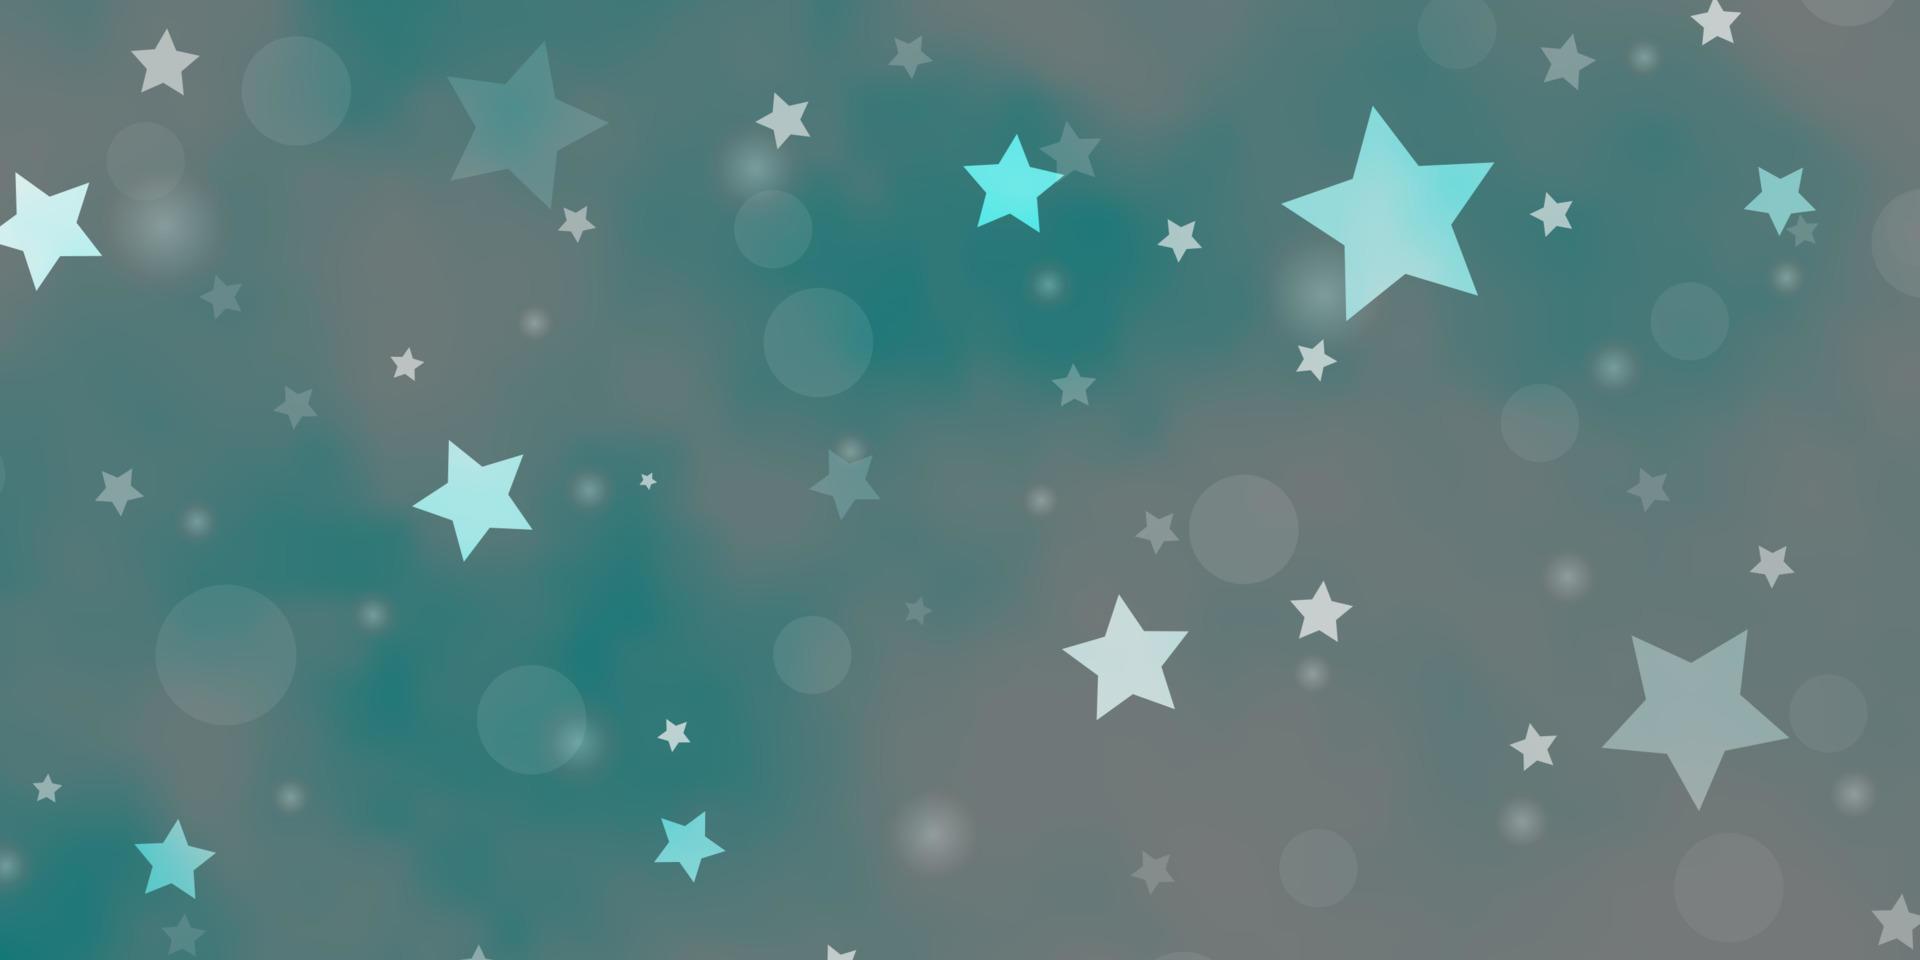 textura de vector azul claro con círculos, estrellas.